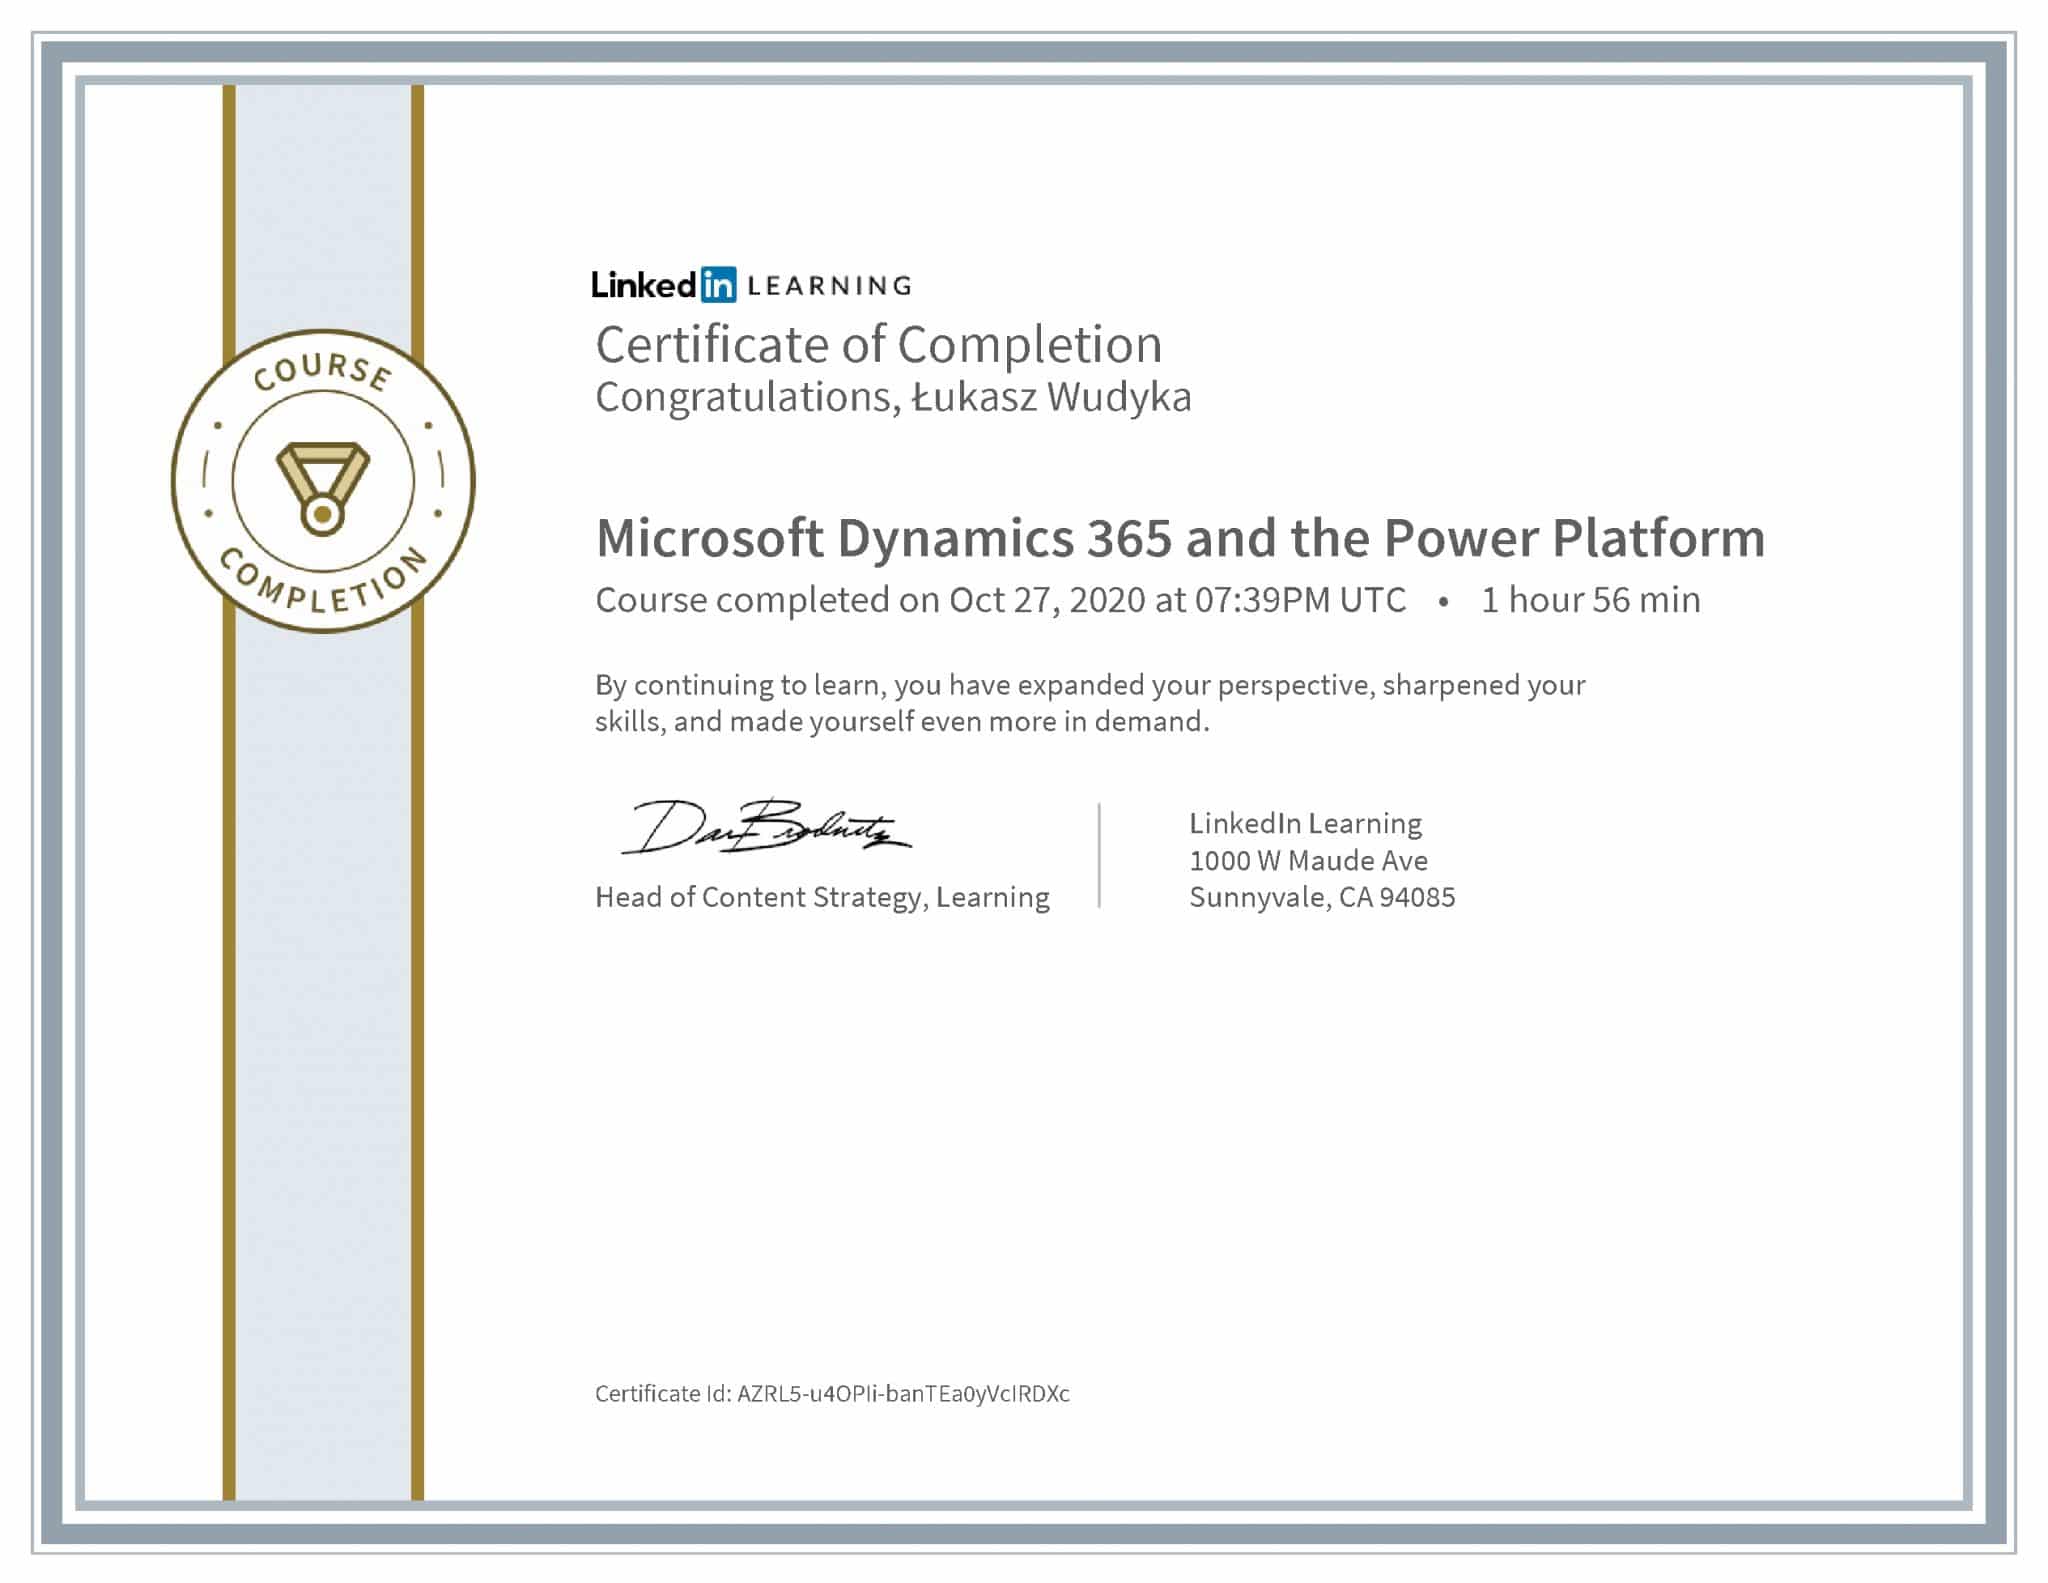 Łukasz Wudyka certyfikat LinkedIn Microsoft Dynamics 365 and the Power Platform